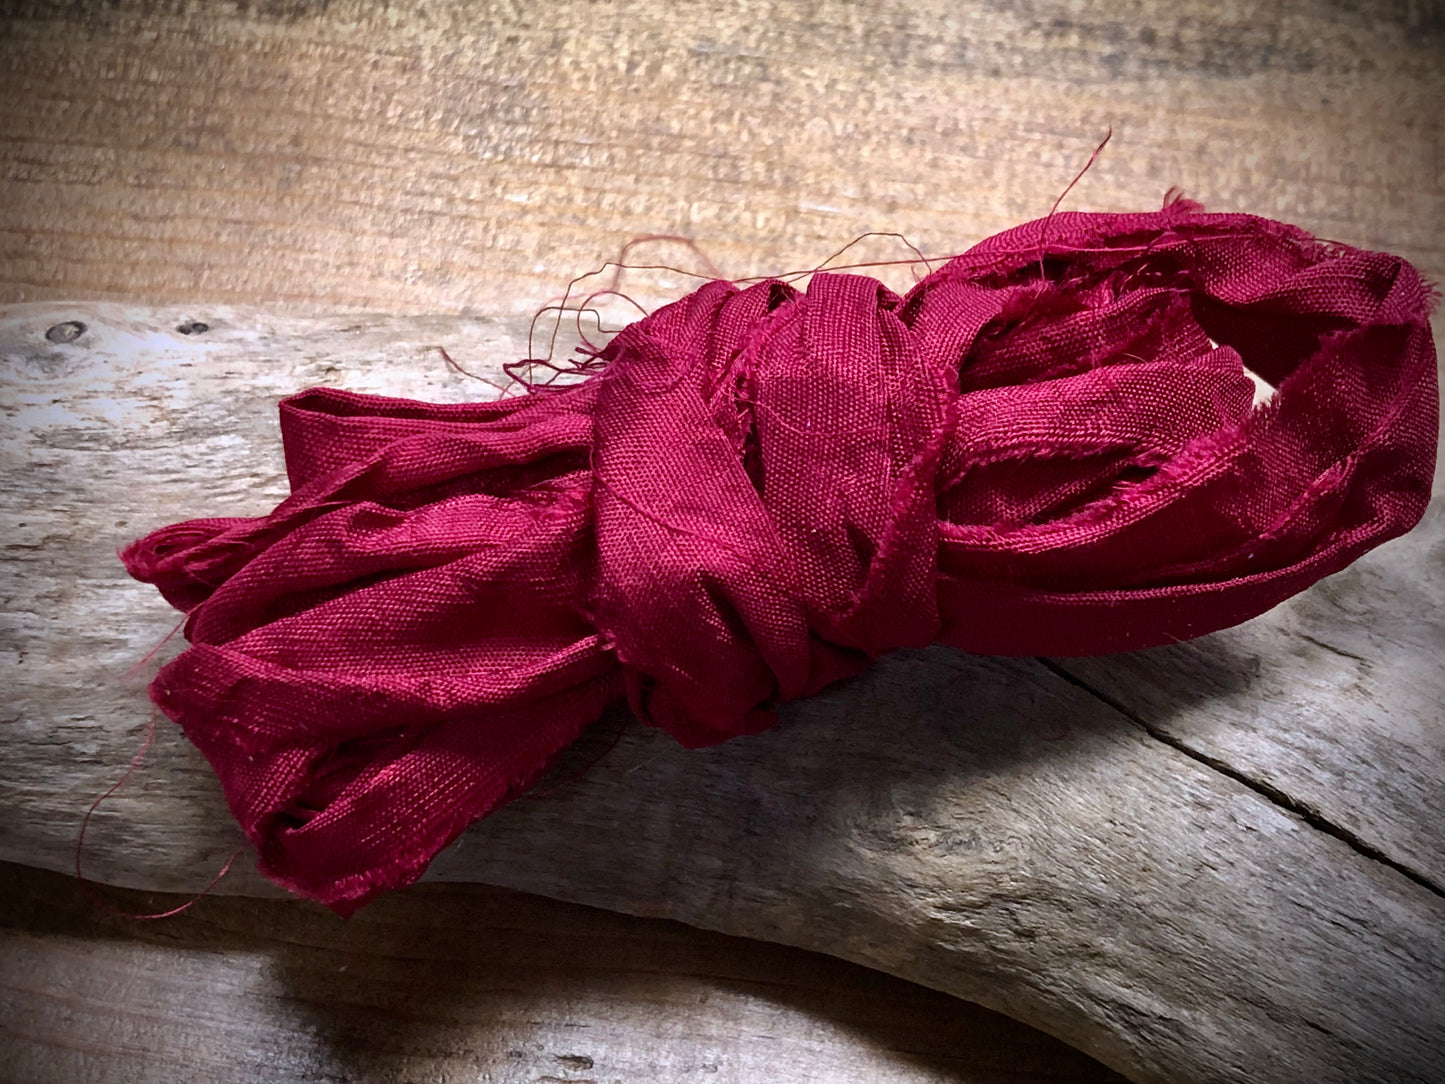 Sari Silk - Rose Red